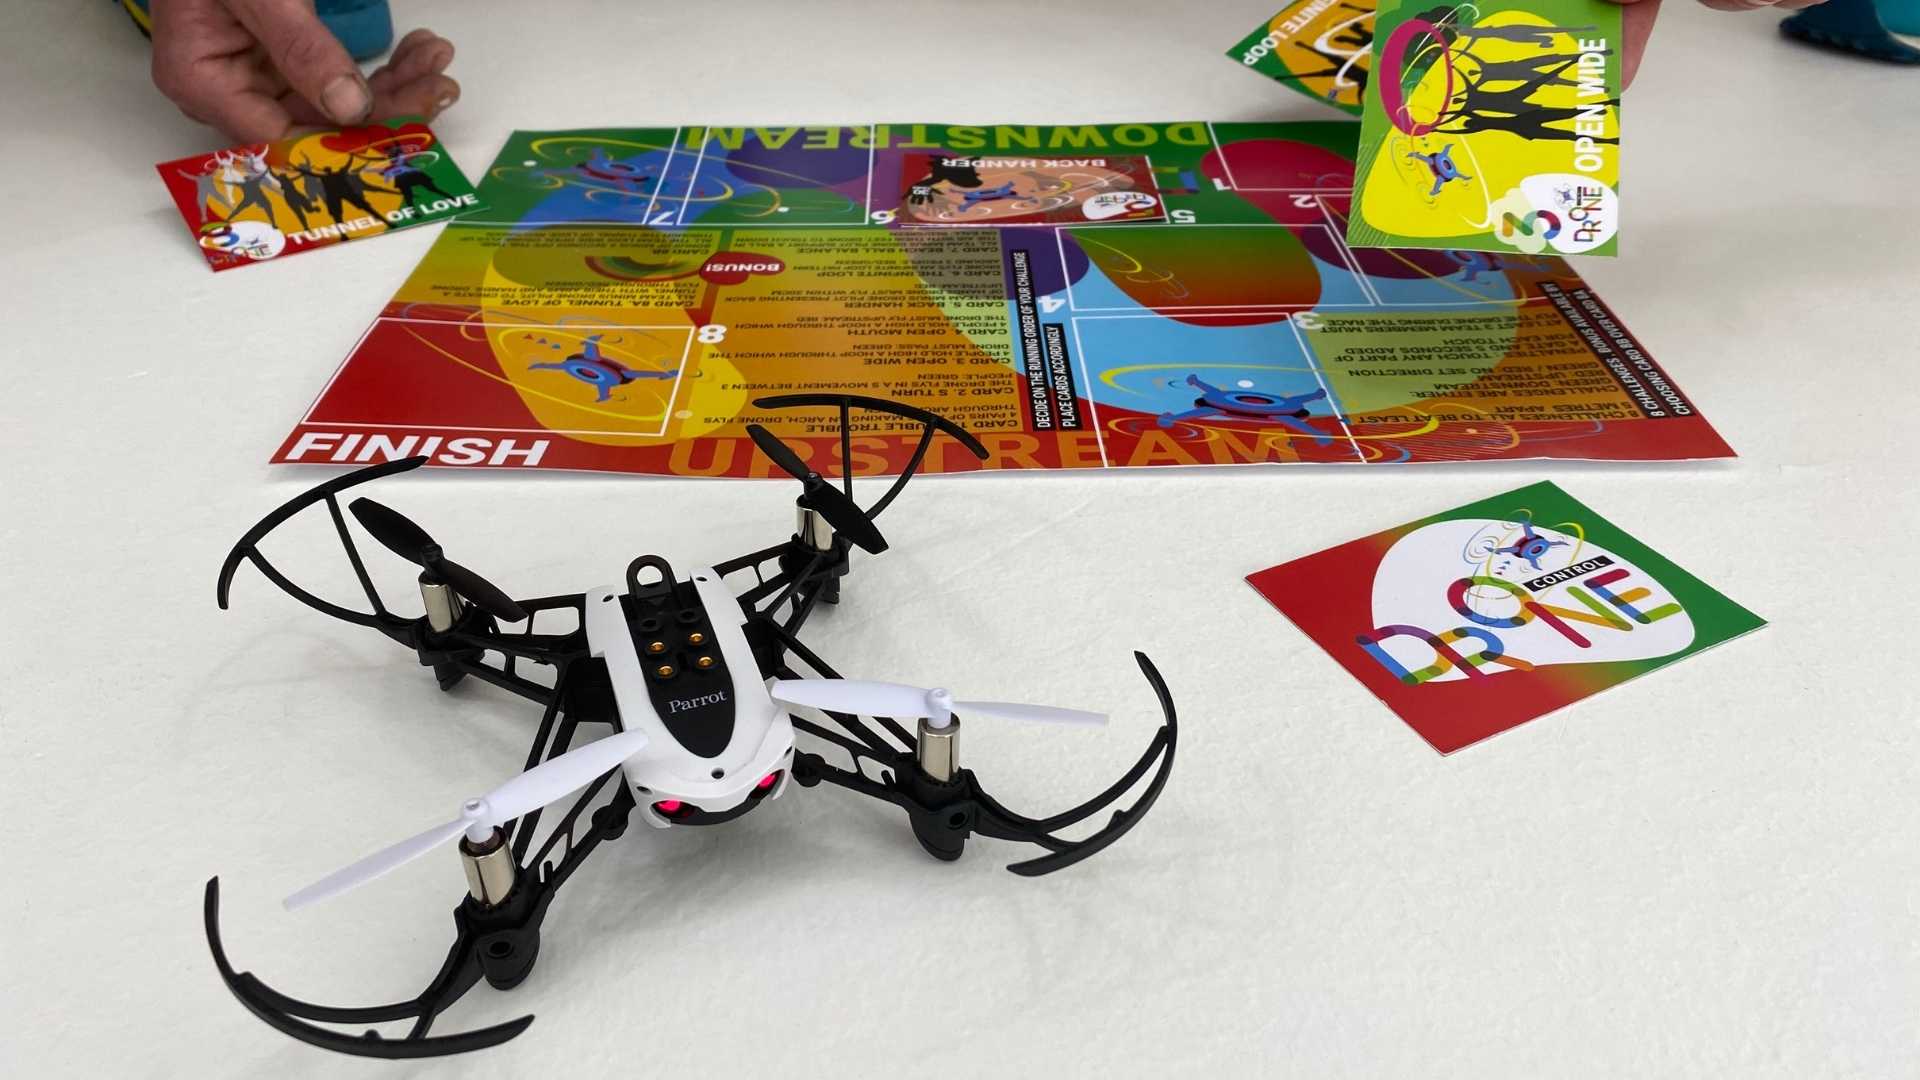 Dron in igralna plošča za team building program poletimo